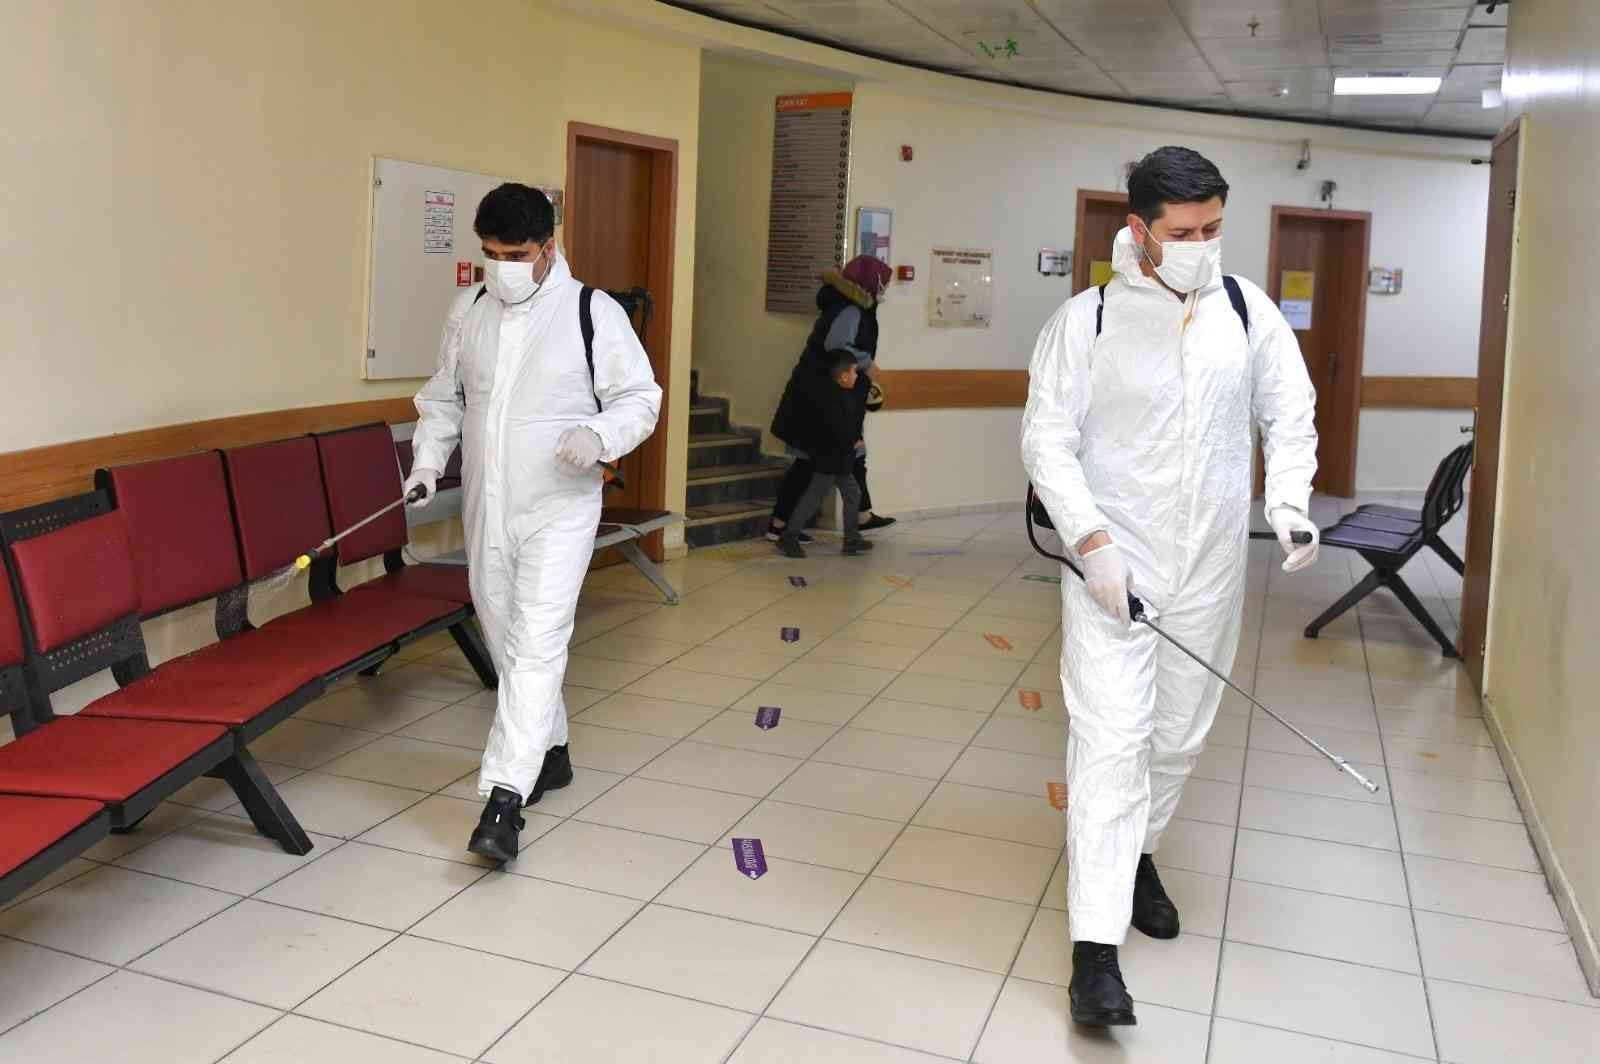 Esenyurt Belediyesi, Korona virüs’e karşı dezenfeksiyon çalışmalarını sürdürüyor #istanbul